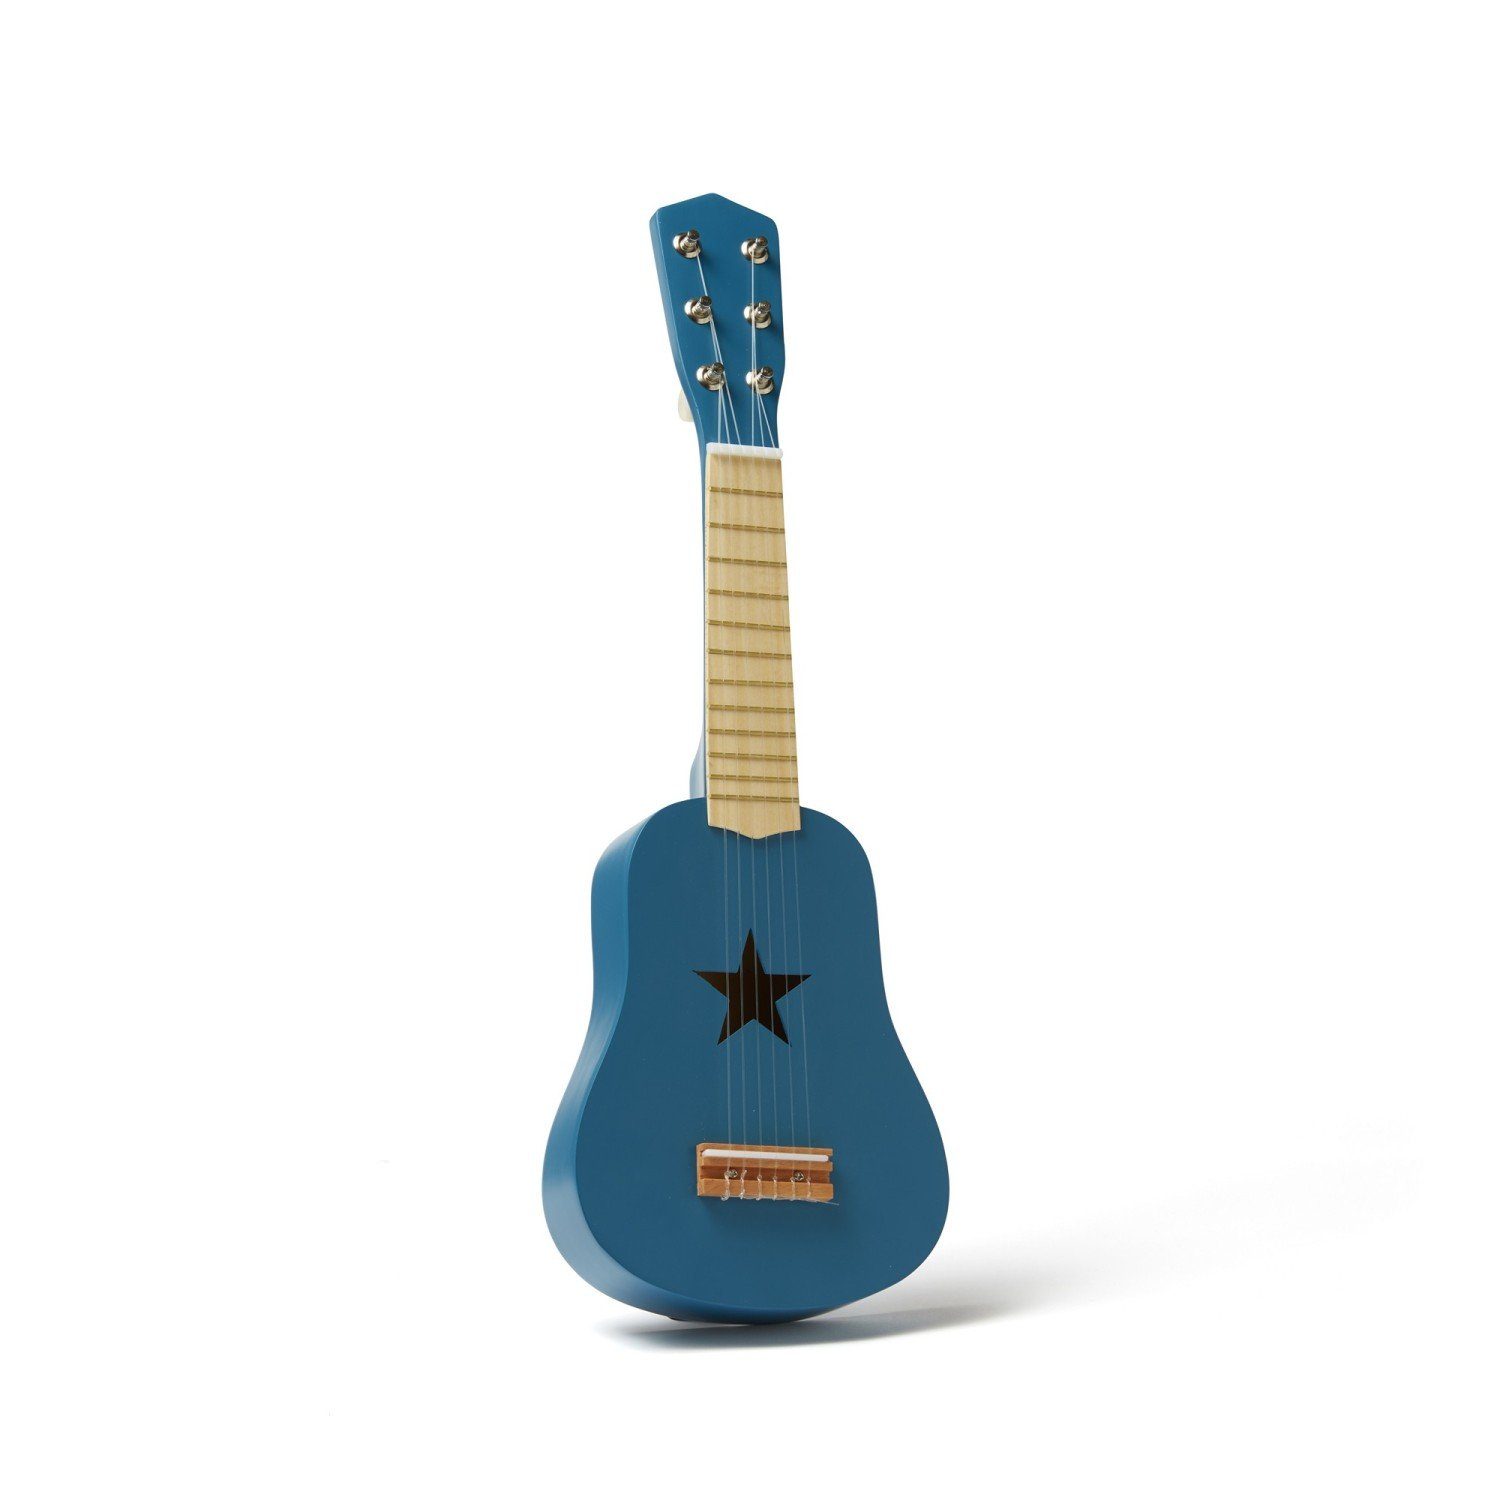 Kids Concept Spielzeug-Musikinstrument Meine erste Gitarre blau 53cm